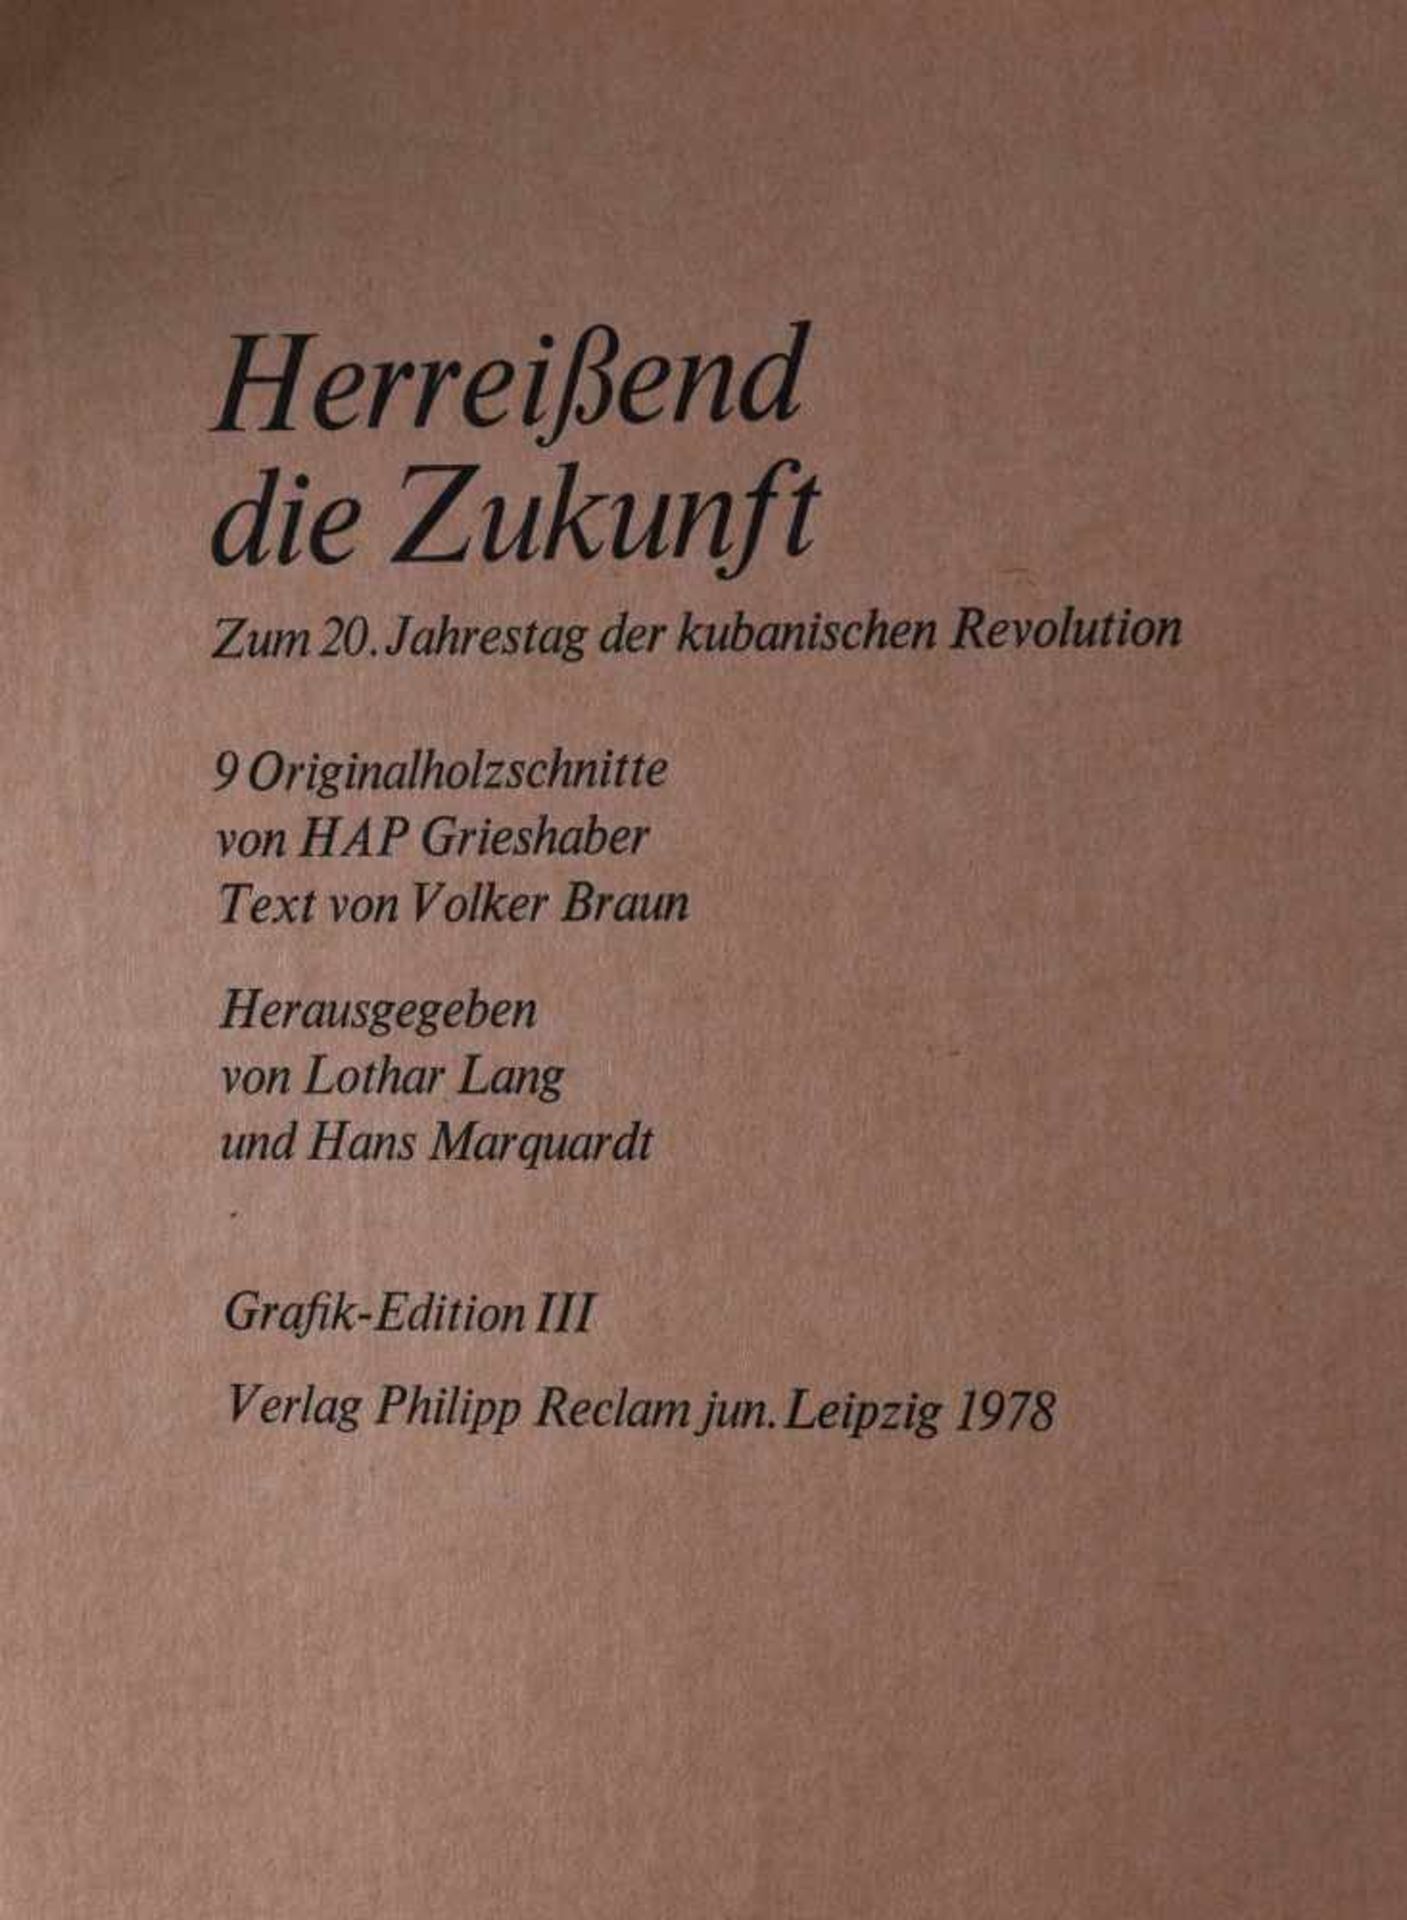 Hap GRIESHABER (1909-1981)"Mappenwerk Herreissend die Zukunft" 1978 zum 20. Jahrestag der - Bild 2 aus 6